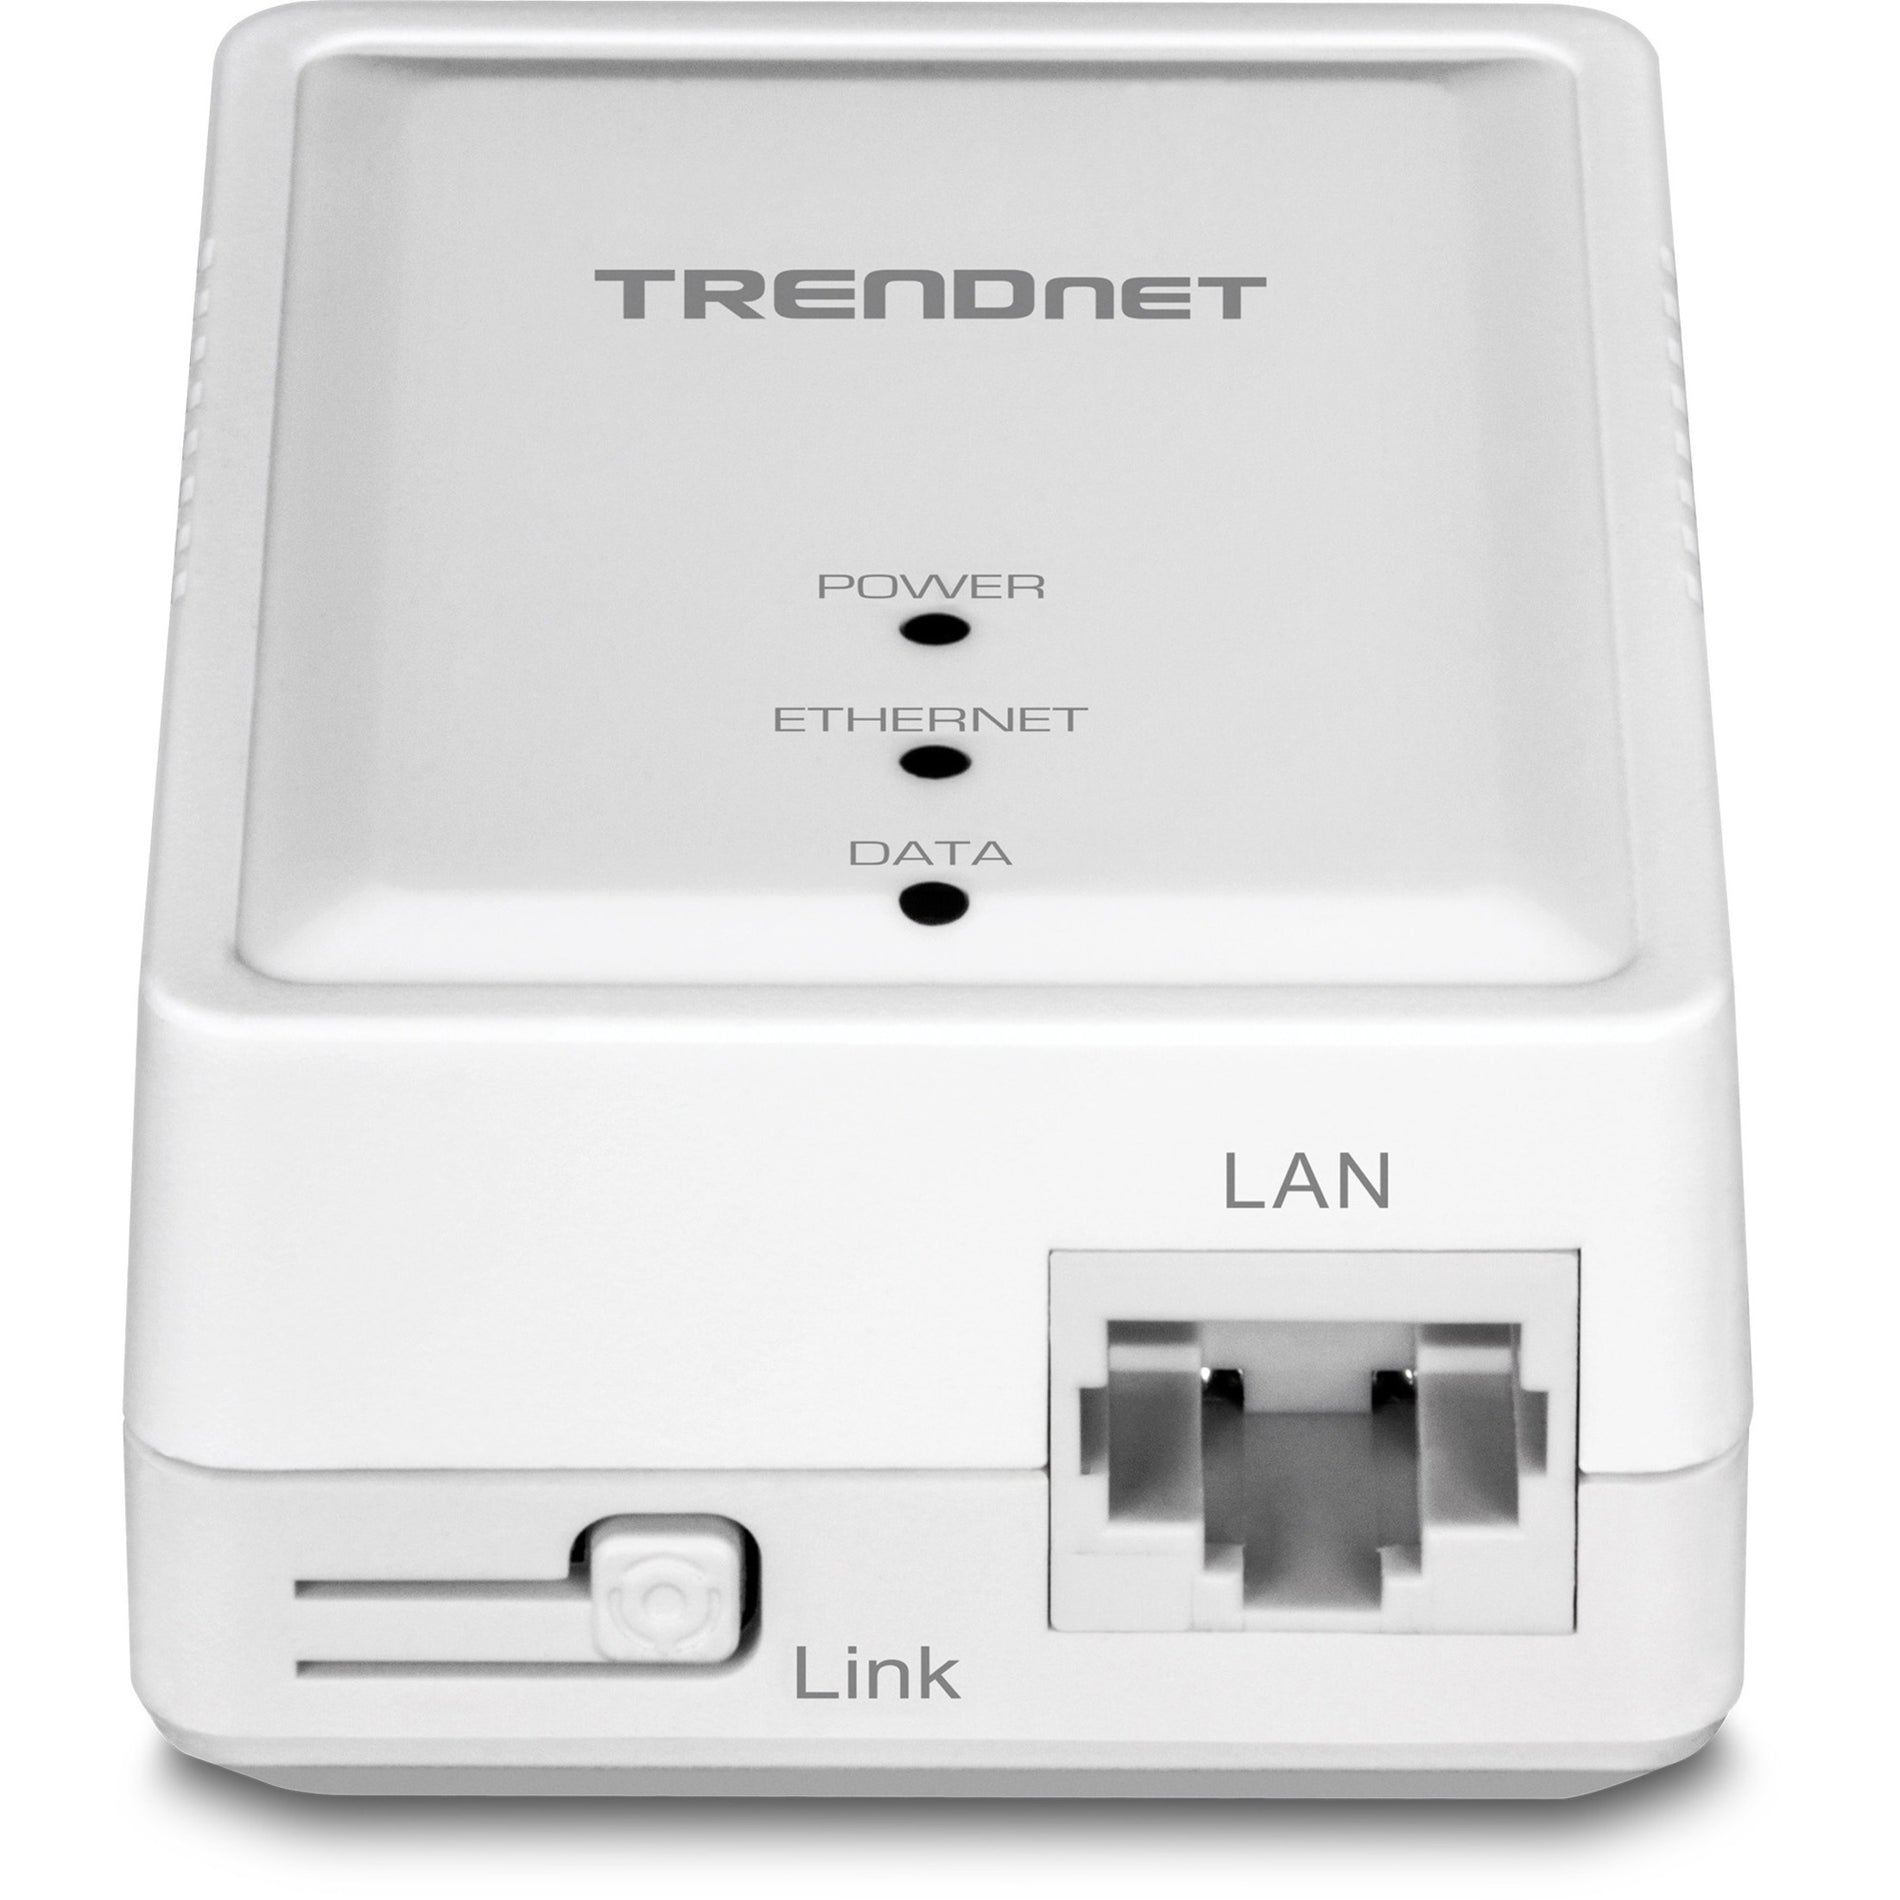 TRENDnet TPL-406E2K Powerline 500 AV Nano Adapter Kit, Plug & Play Install